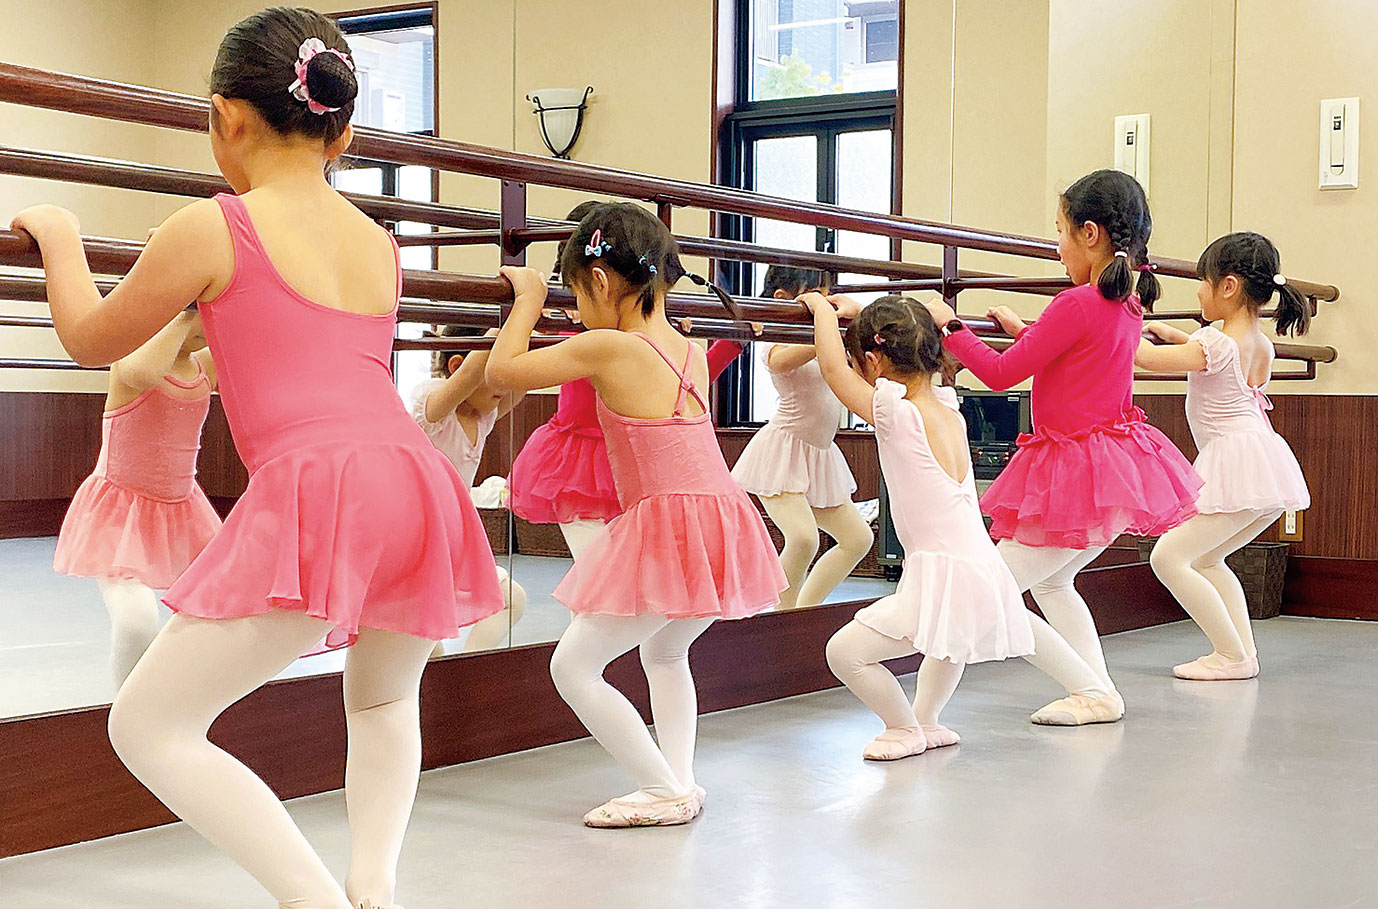 感性を育てるバレエ教室 3歳からの こどものバレエ 教室で キレイ女子 を育てませんか びんなび